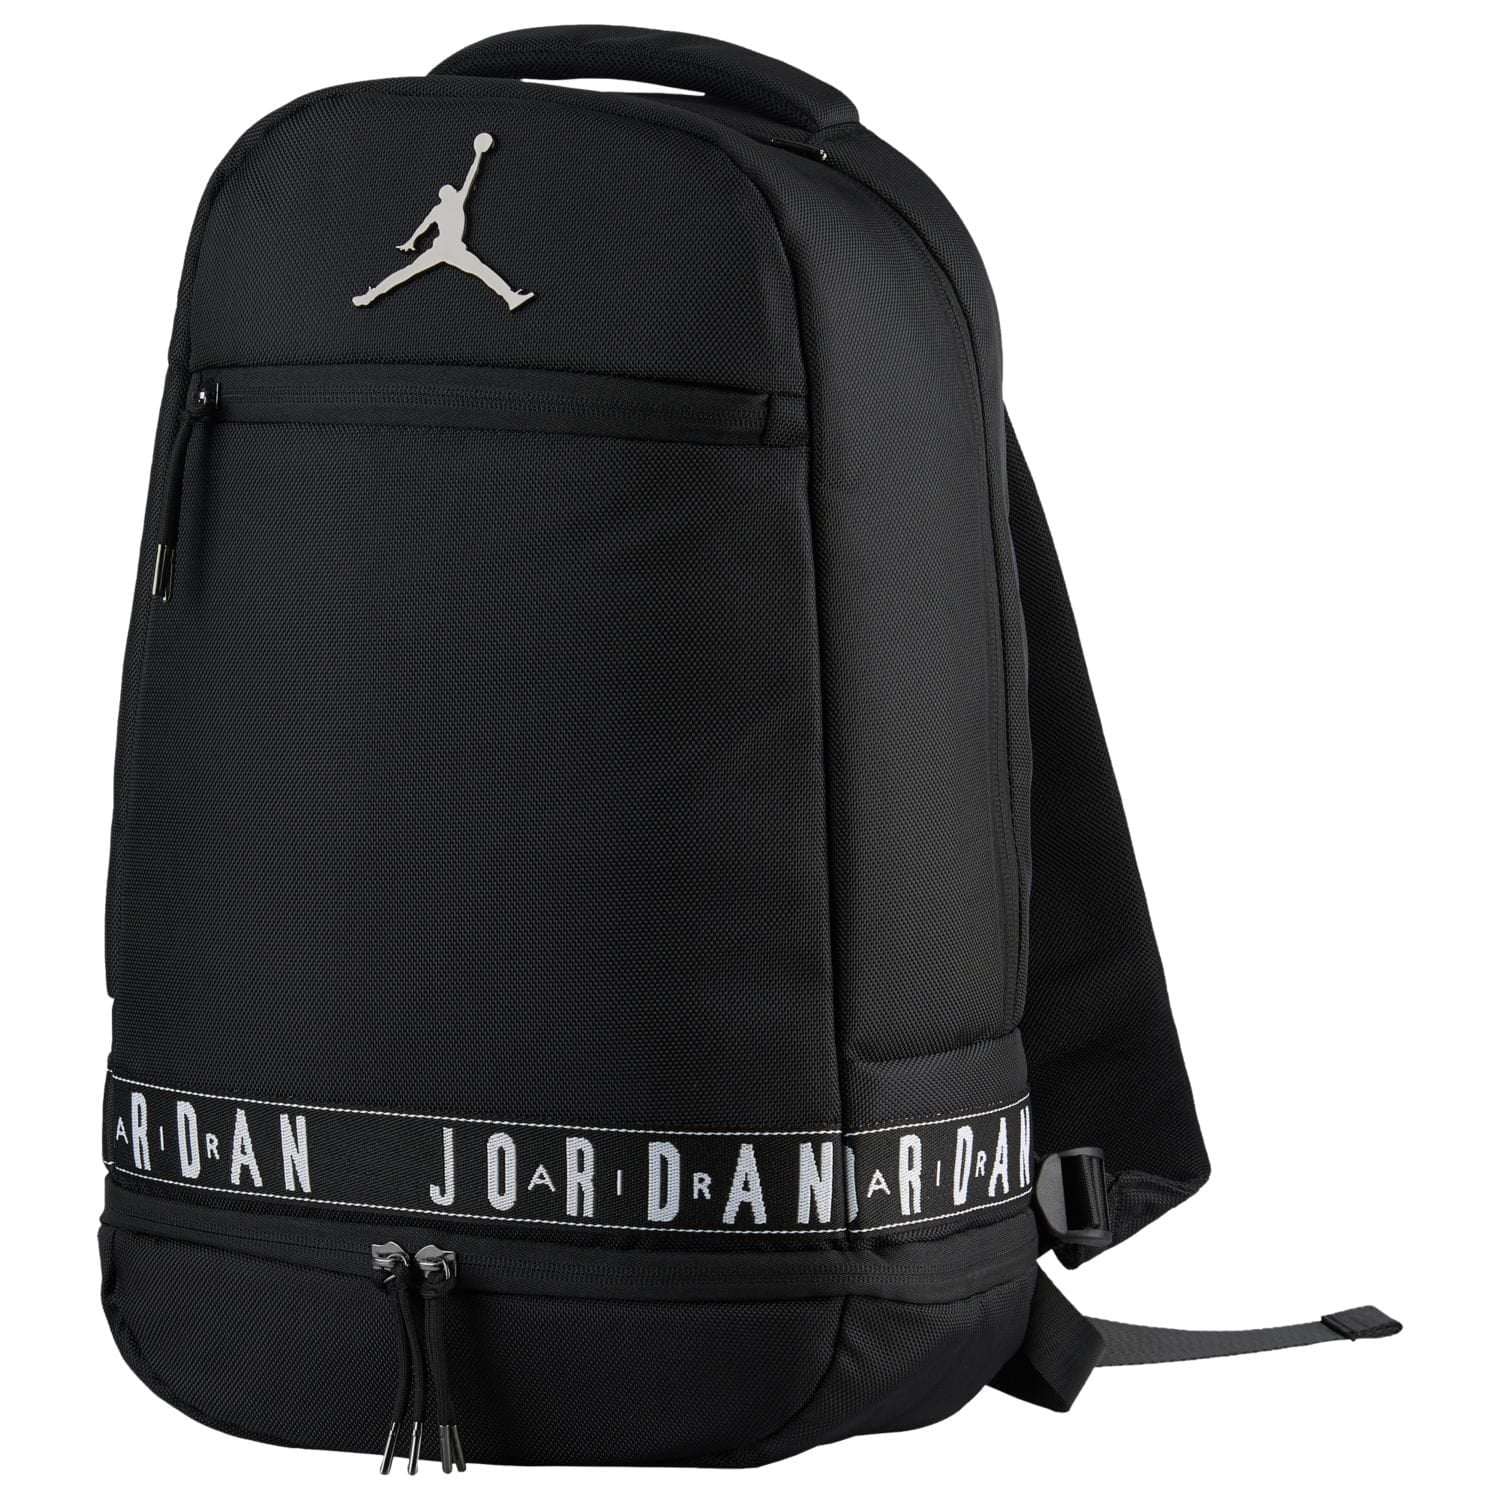 Jordan - Nike Air Jordan Skyline Taping Backpack - Walmart.com - Walmart.com